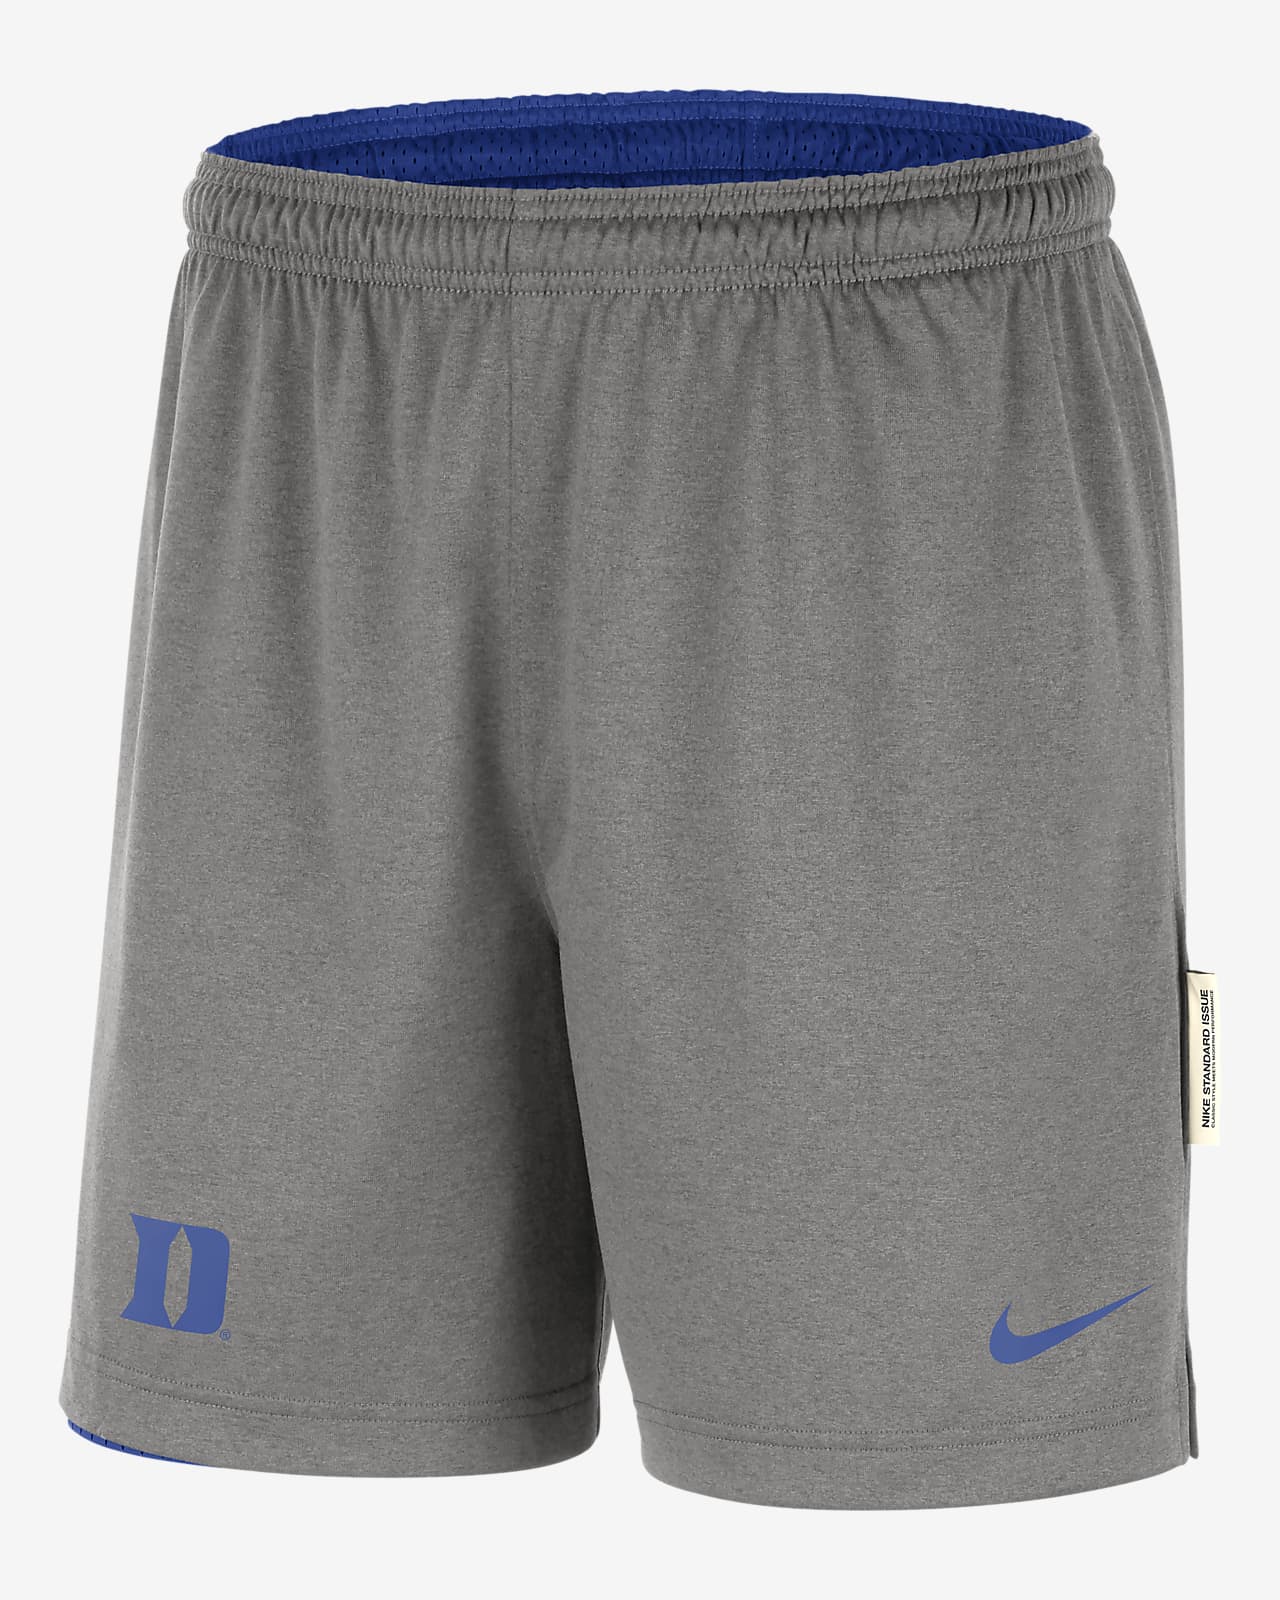 Nike College (Duke) Men's Reversible Shorts. Nike.com